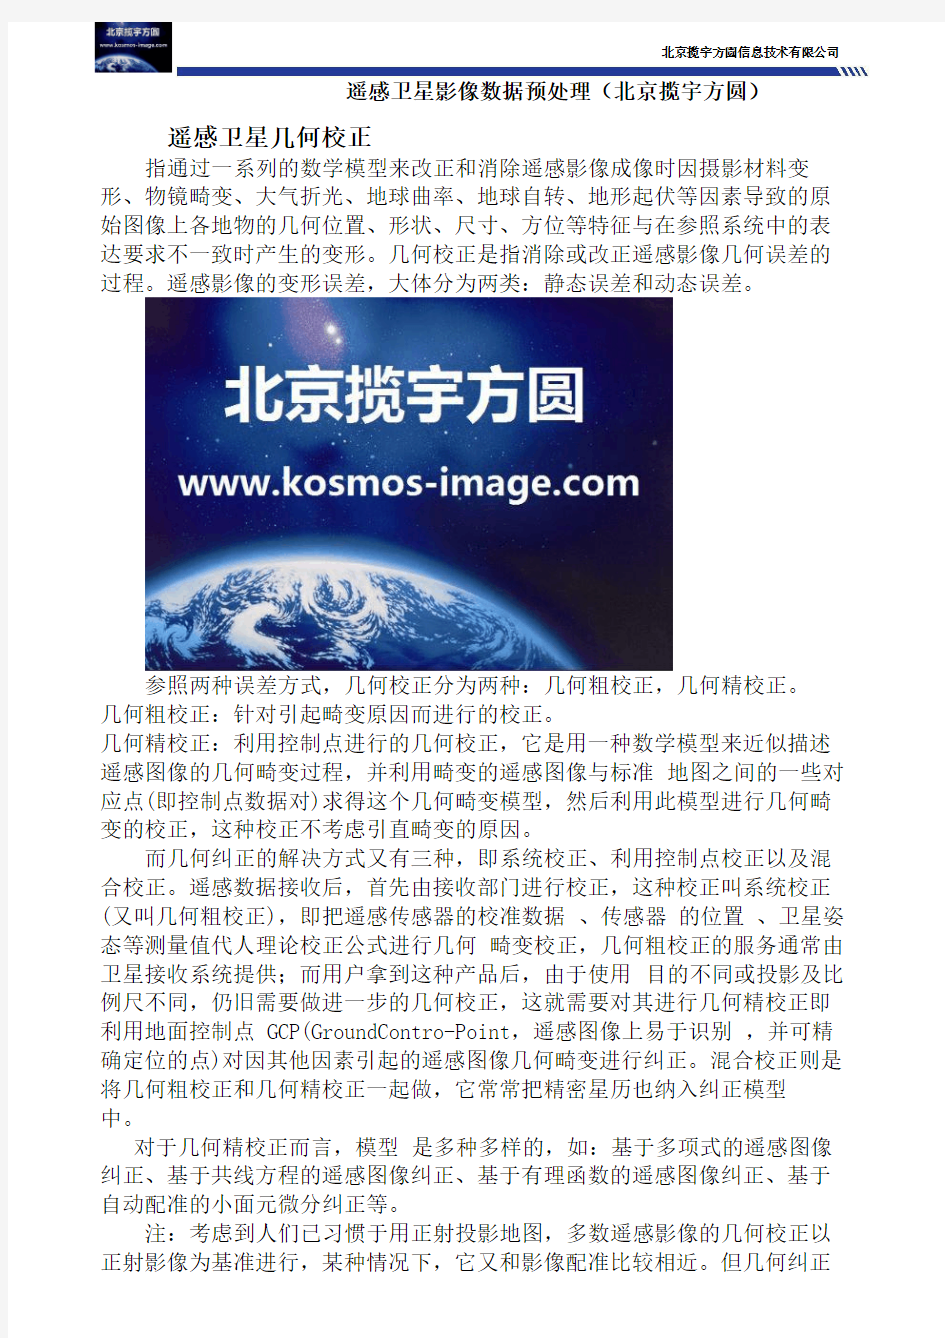 遥感卫星影像数据预处理(北京揽宇方圆)